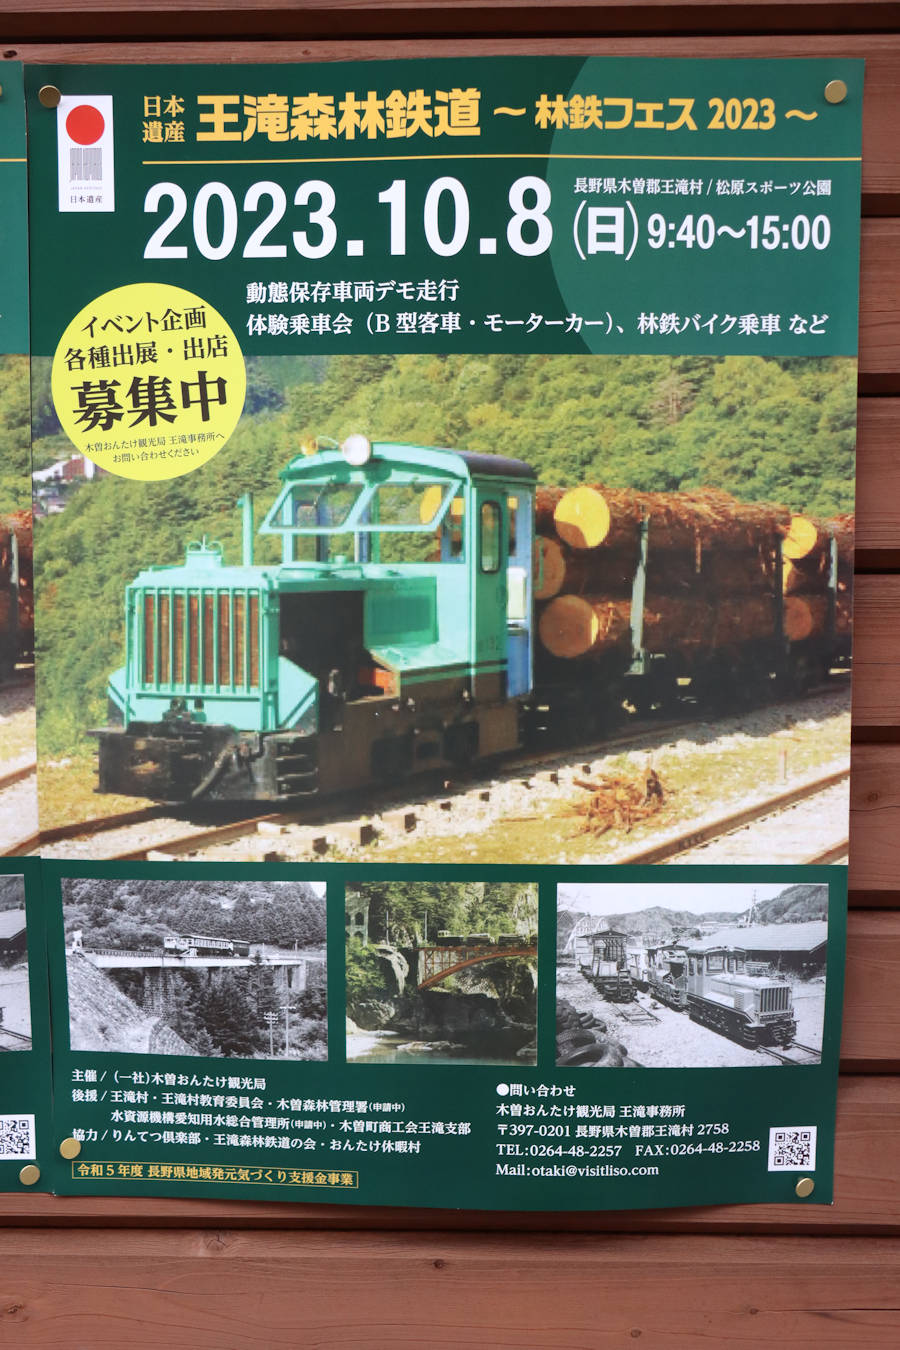 王滝村林鉄フェスのポスター。2023年(令和5年)10月、王滝村林鉄フェス(長野県木曽郡王滝村にて開催)に際して撮影。